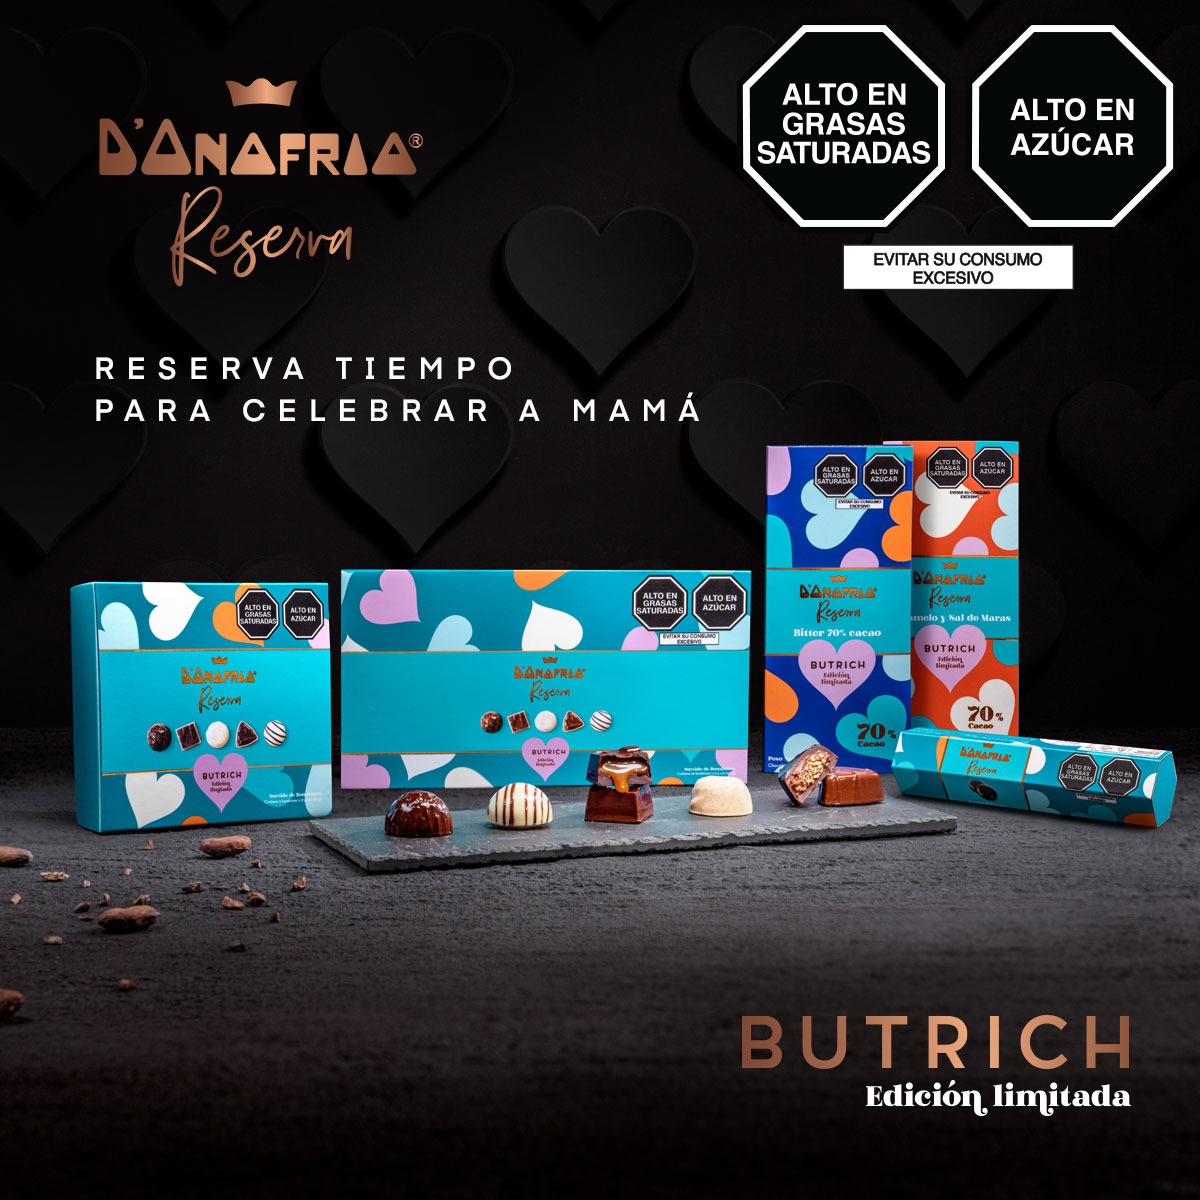 Butrich colabora con D’Onofrio reserva para edición limitada de chocolates por el Día de la Madre